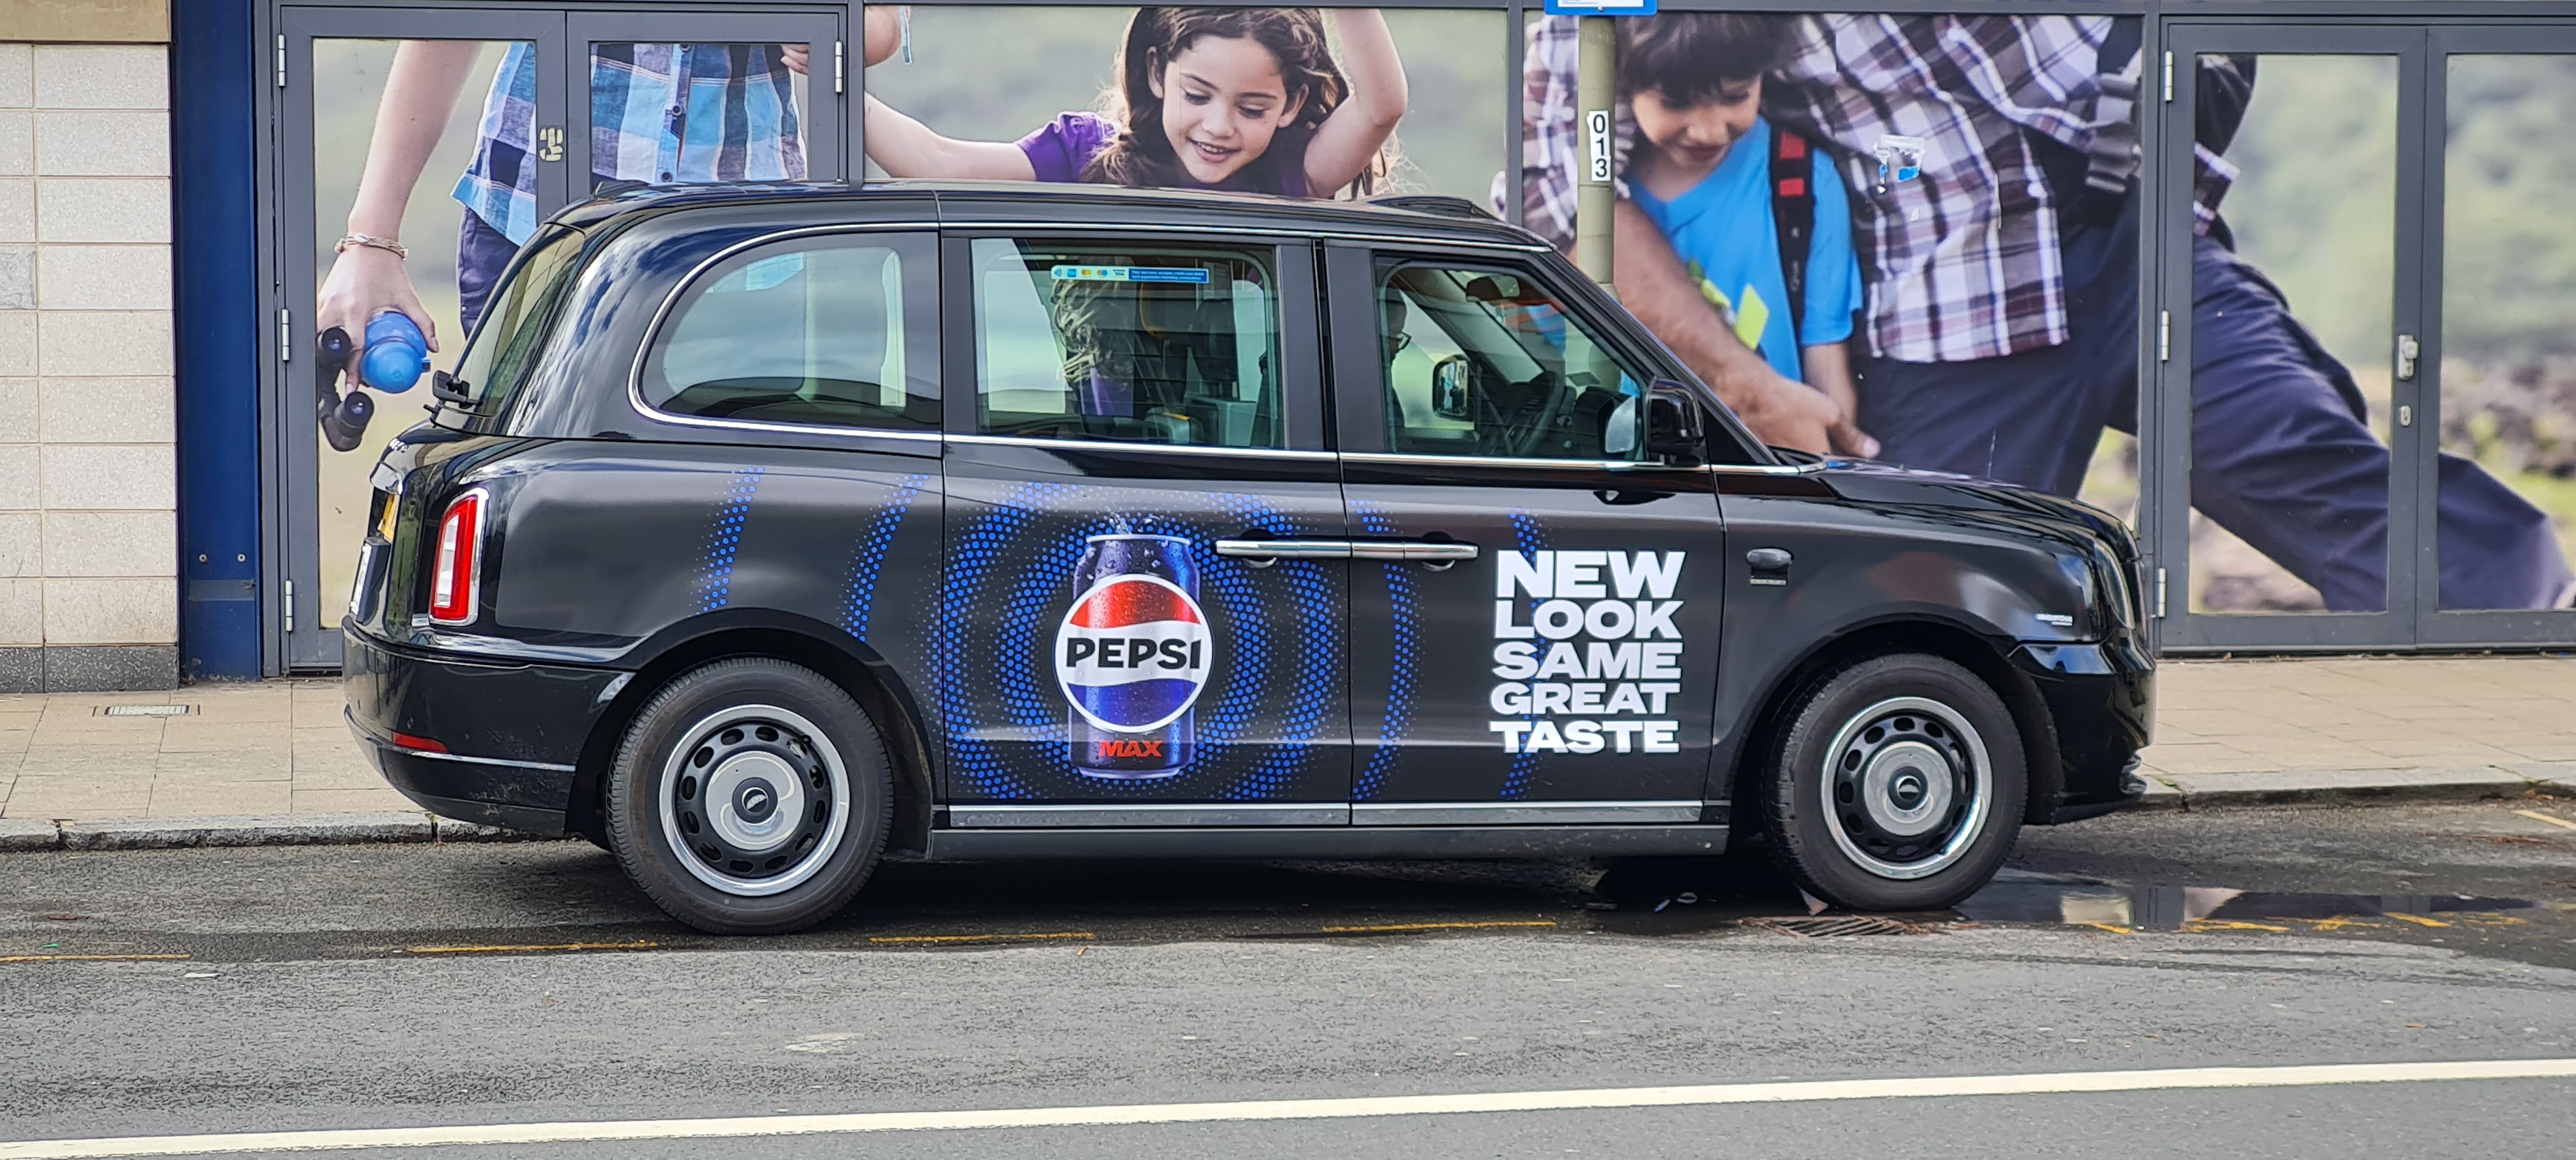 Black cab promoting Pepsi